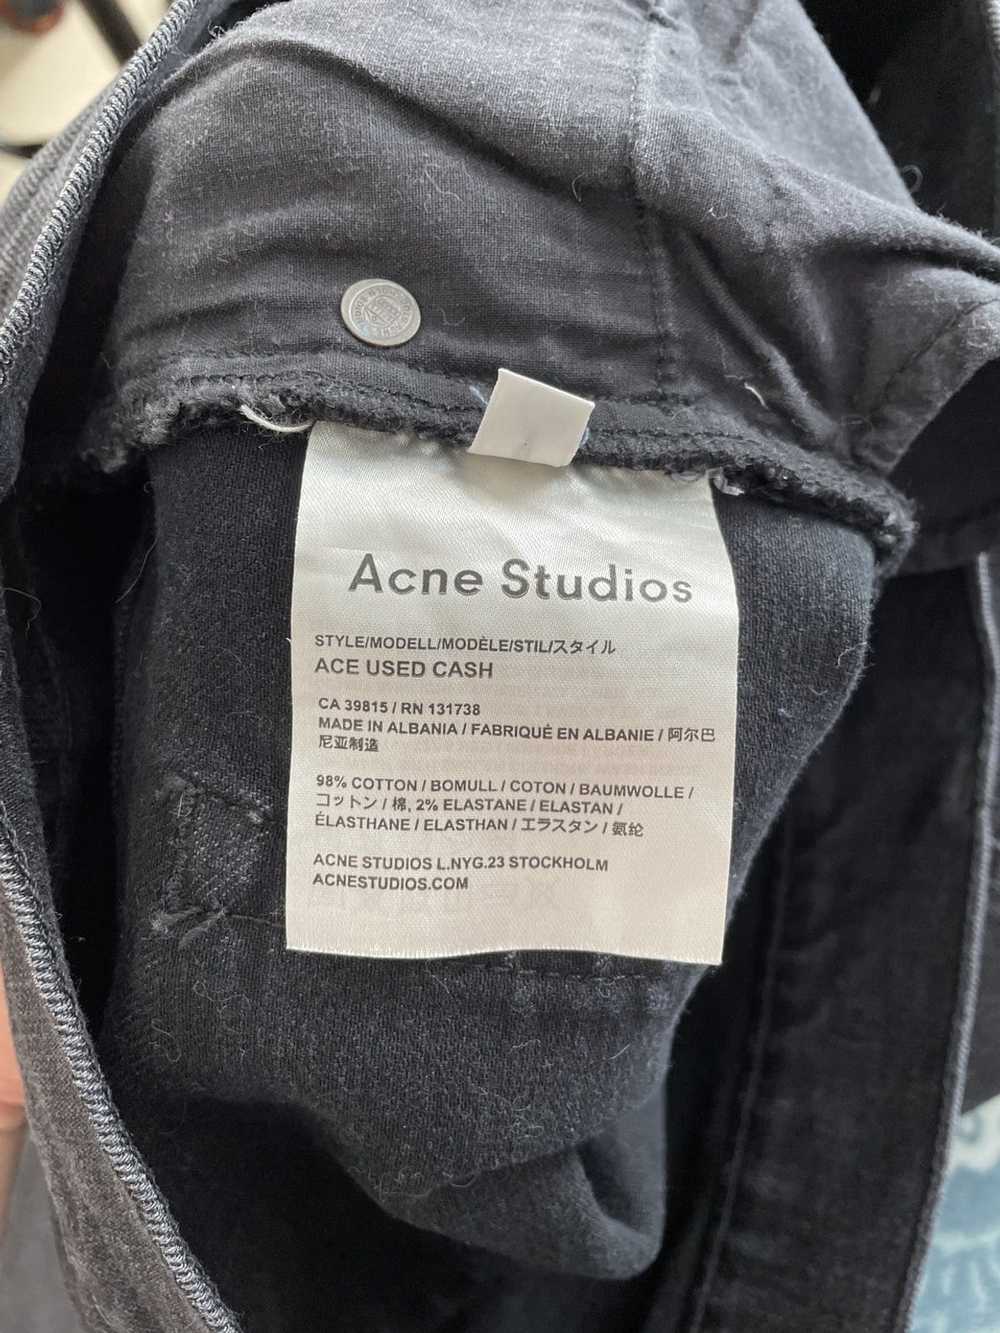 Acne Studios Acne Studios Ace Used Cash 34/34 - image 3